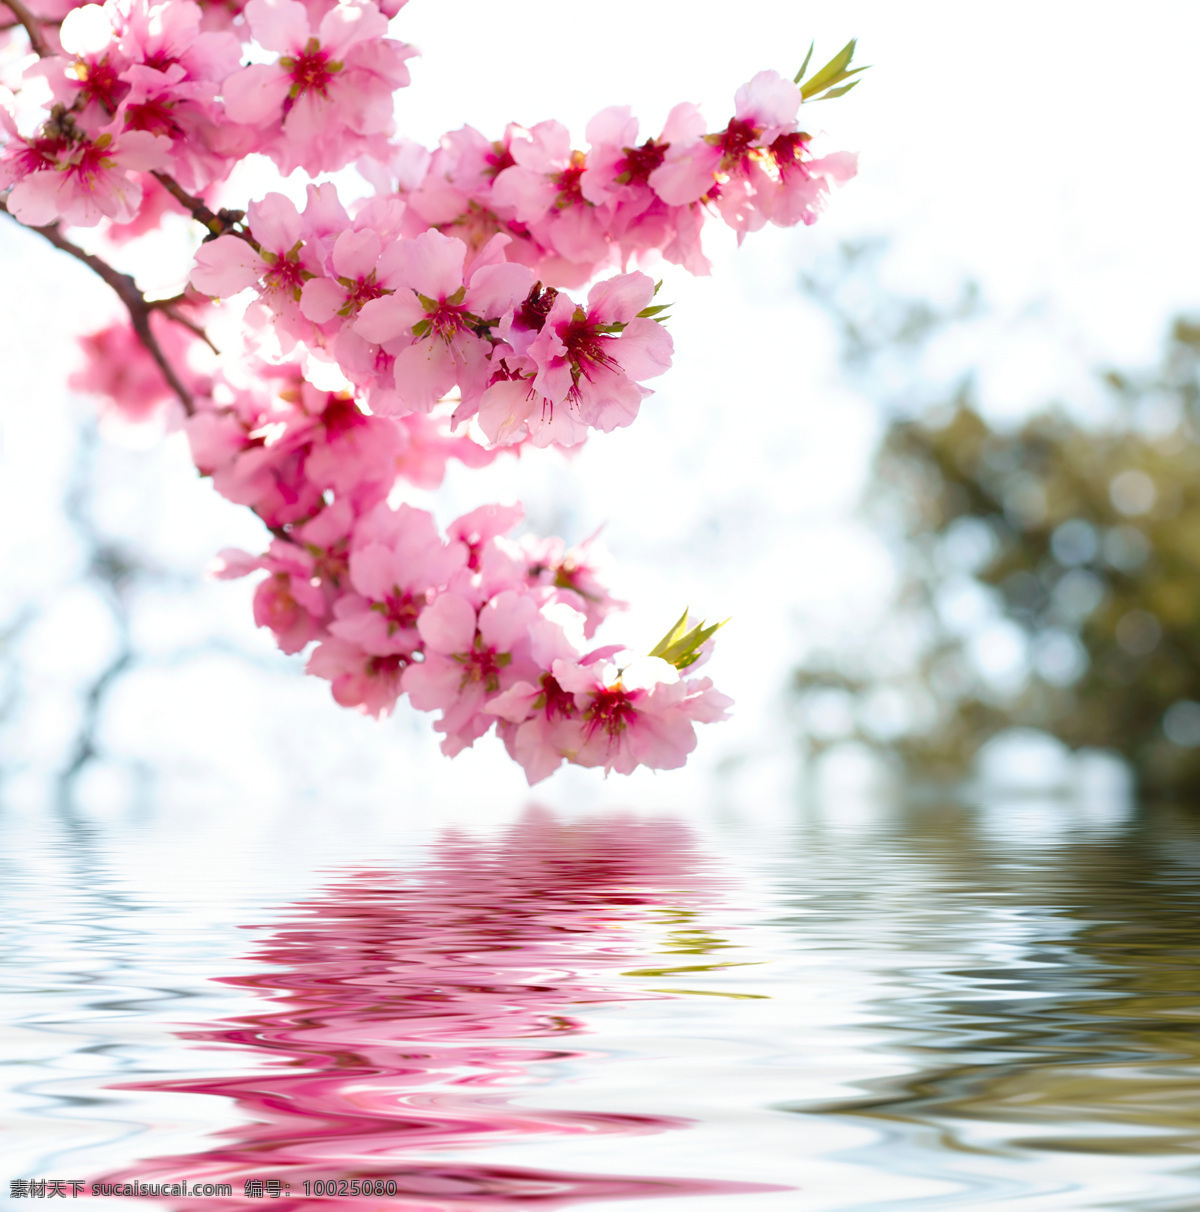 水面桃花 桃花 倒影 水纹 粉色 鲜花 花草 水中 水面 红色 粉红桃花 背景 花朵 花瓣 生物世界